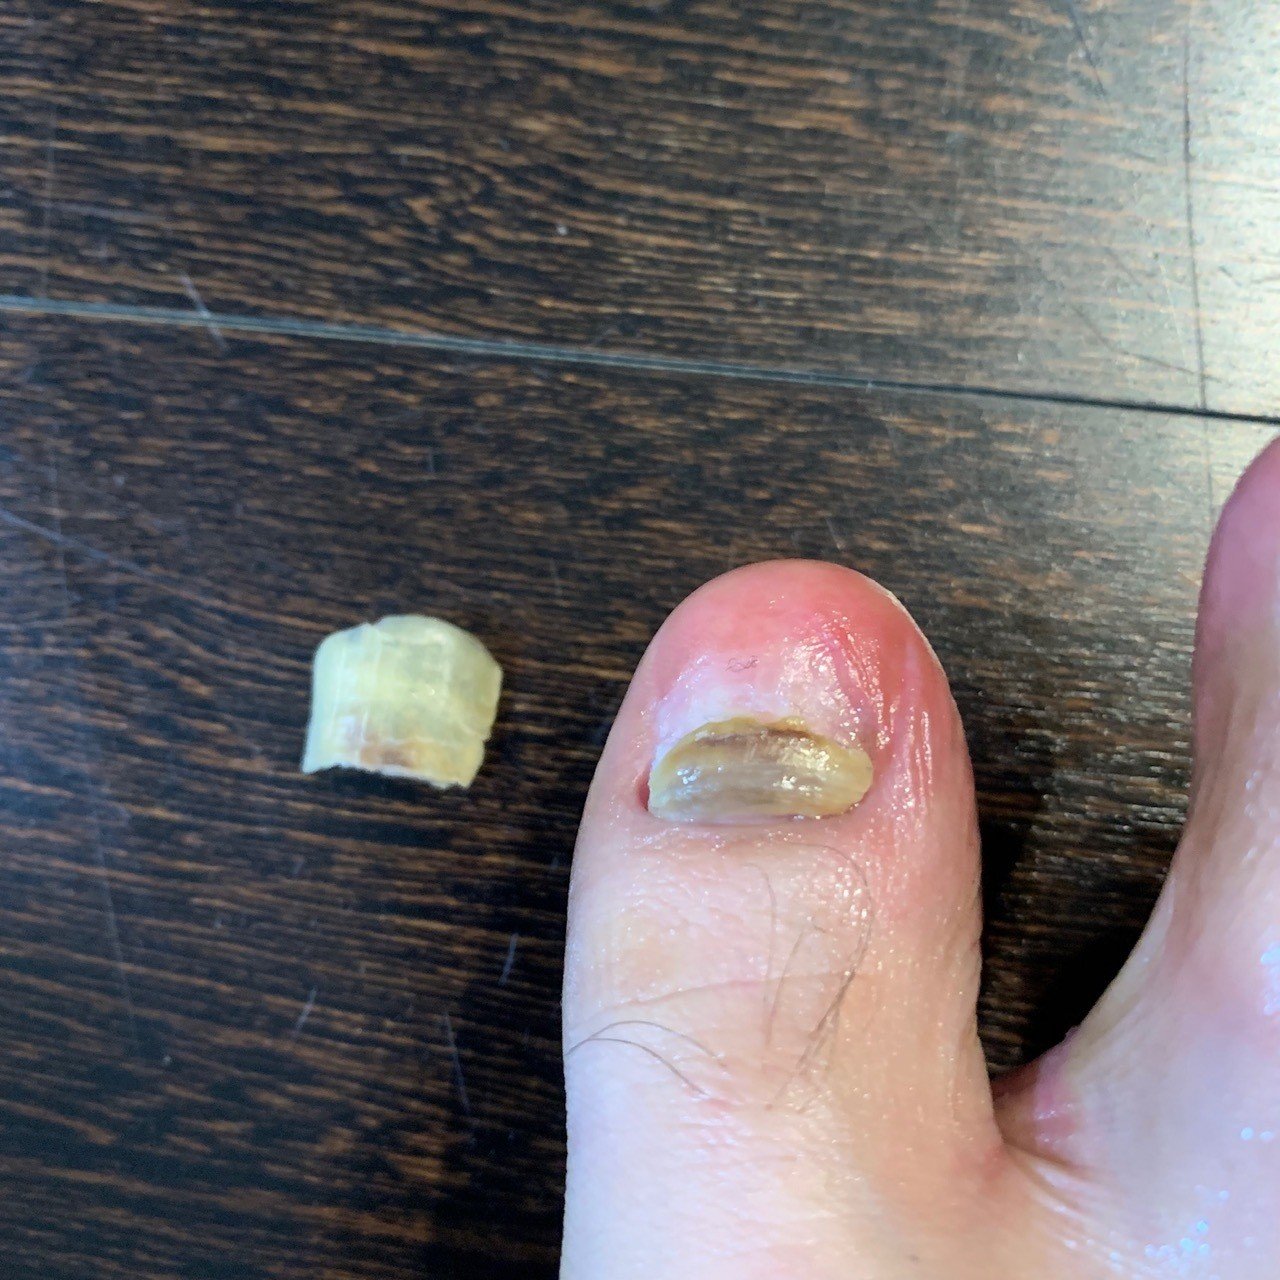 剥がれ 爪 た が 親指 の の 足 足をぶつけ親指の爪がほぼ剥がれてしまったので外科に行き麻酔をして爪を抜いて